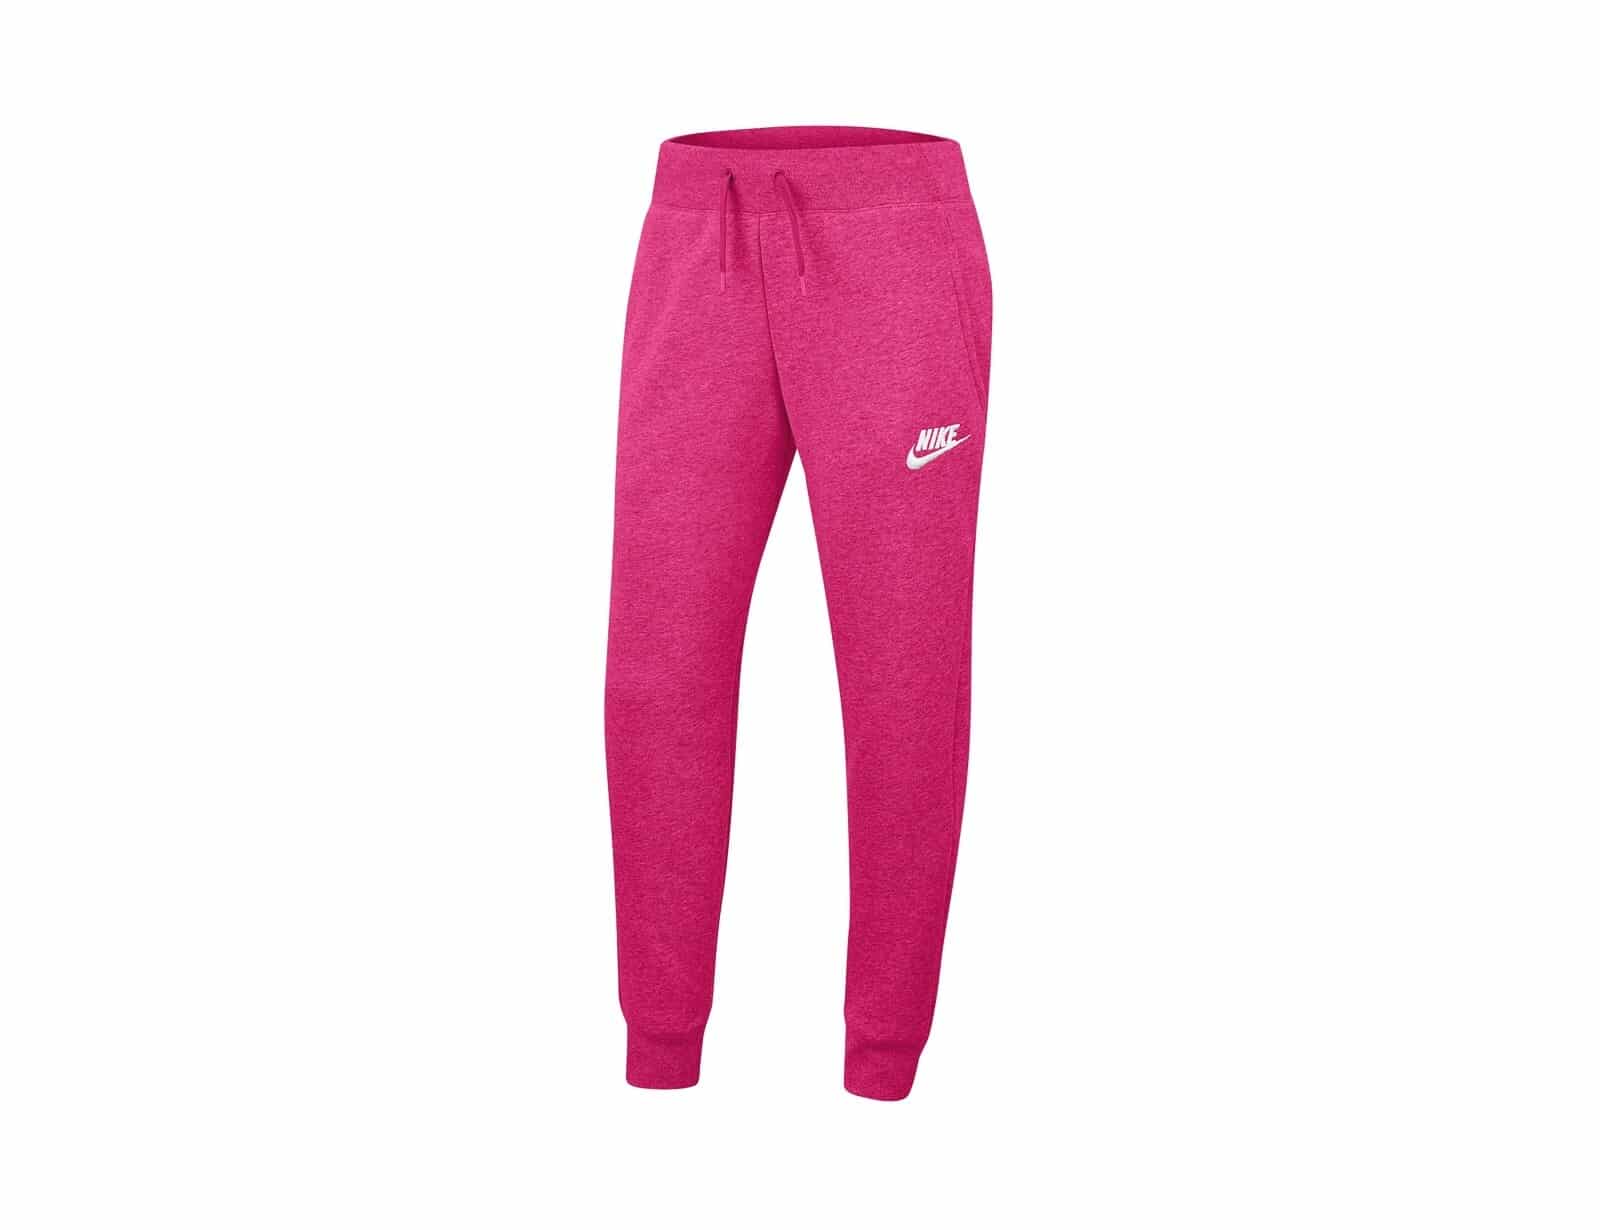 Nike - Sportswear Pants Girls - Roze Joggingbroek Kids